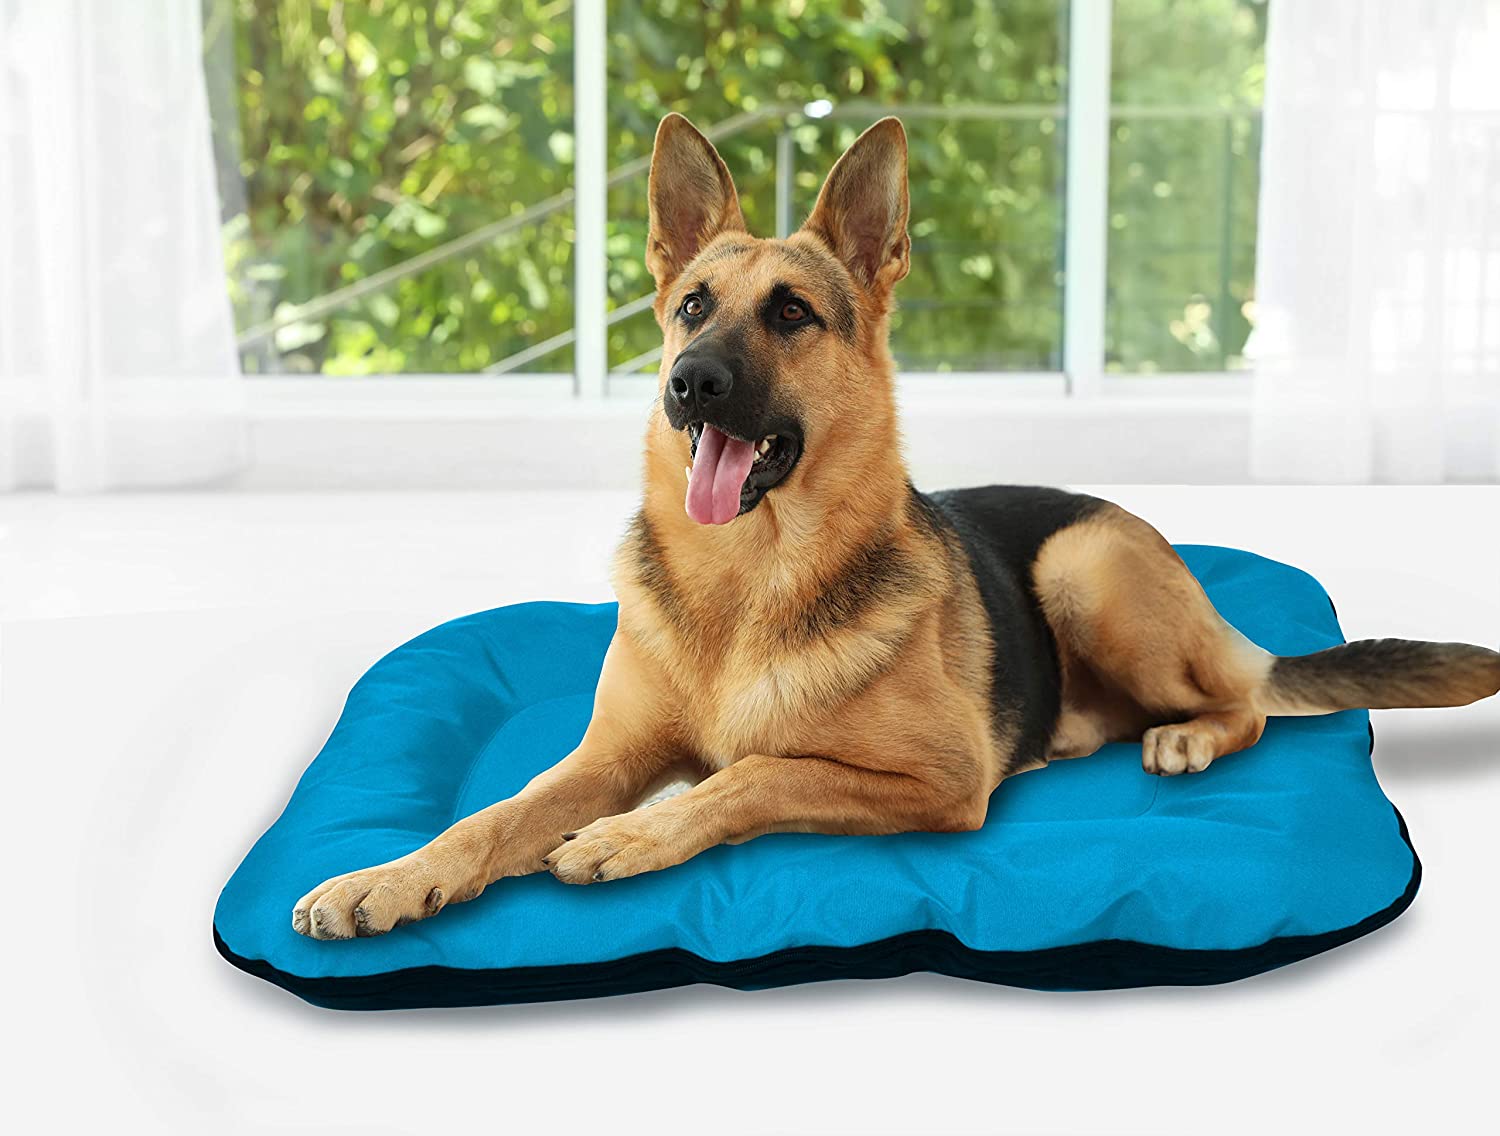  BEST DIRECT Dog Bed Visto en TV Cama para Perro Cojín Tamaño Grande Acolchado Suave e Impermeable para el Hogar y el Exterior Fácil de Lavar - Talla L 88 x 73 cm 